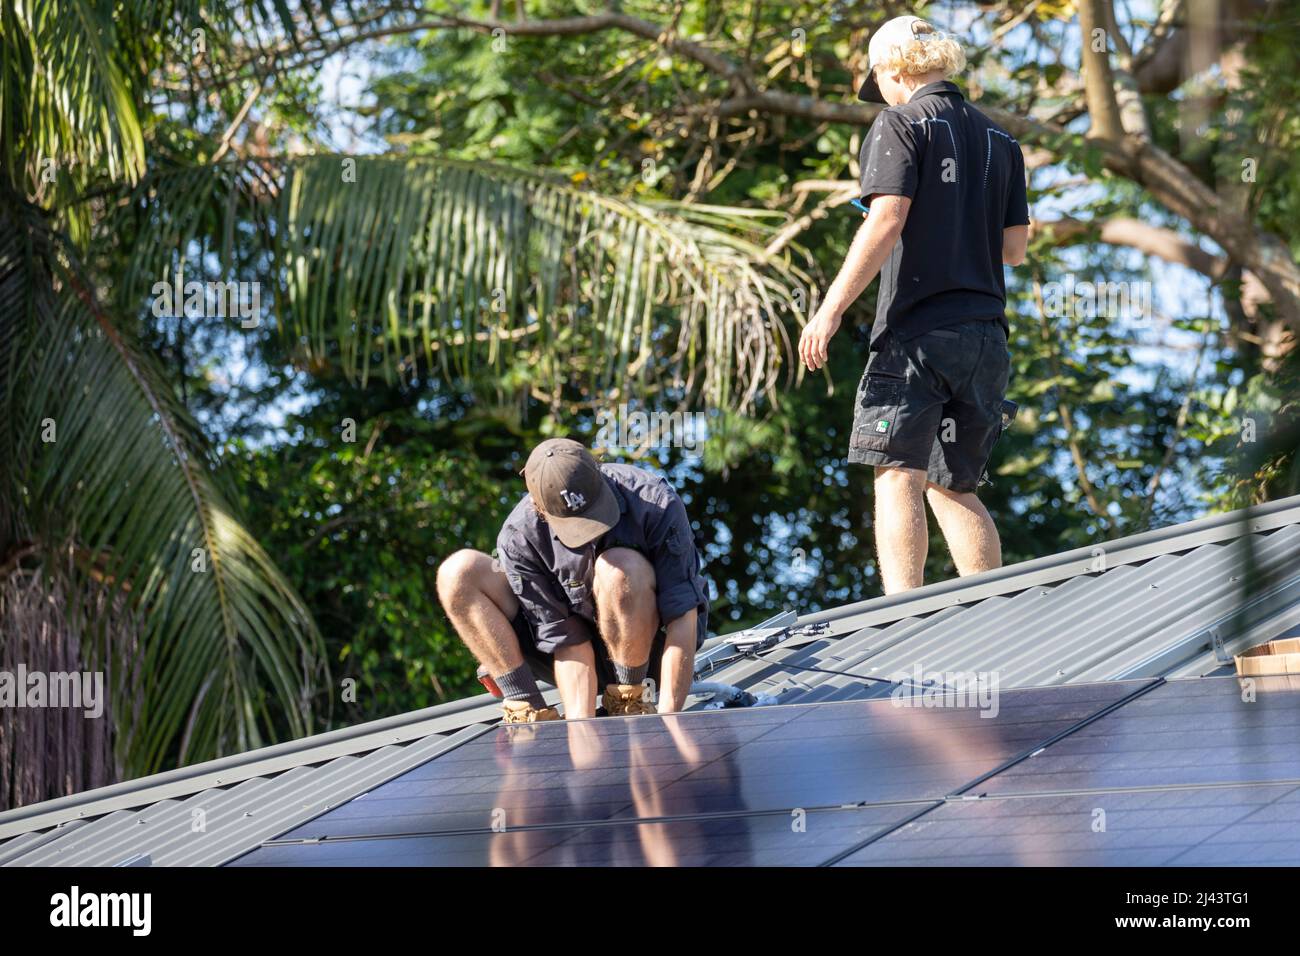 Les installateurs de PV solaire ajustent les panneaux solaires REC noir alpha sur le toit d'une propriété de Sydney,NSW,Australie Banque D'Images